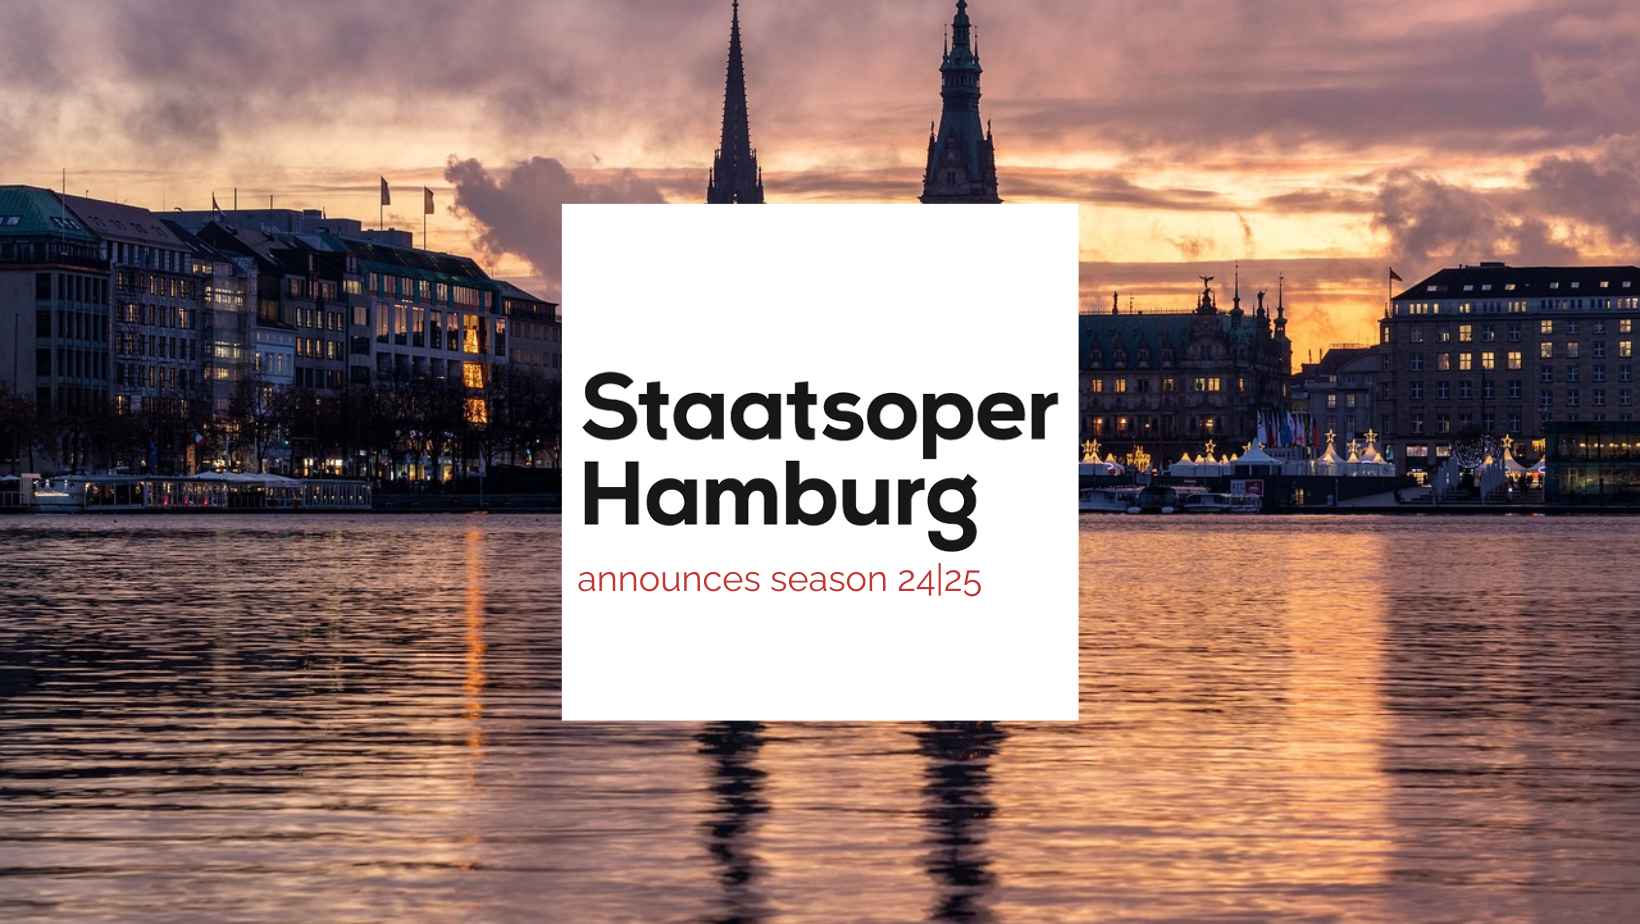 New season at Staatsoper Hamburg! 